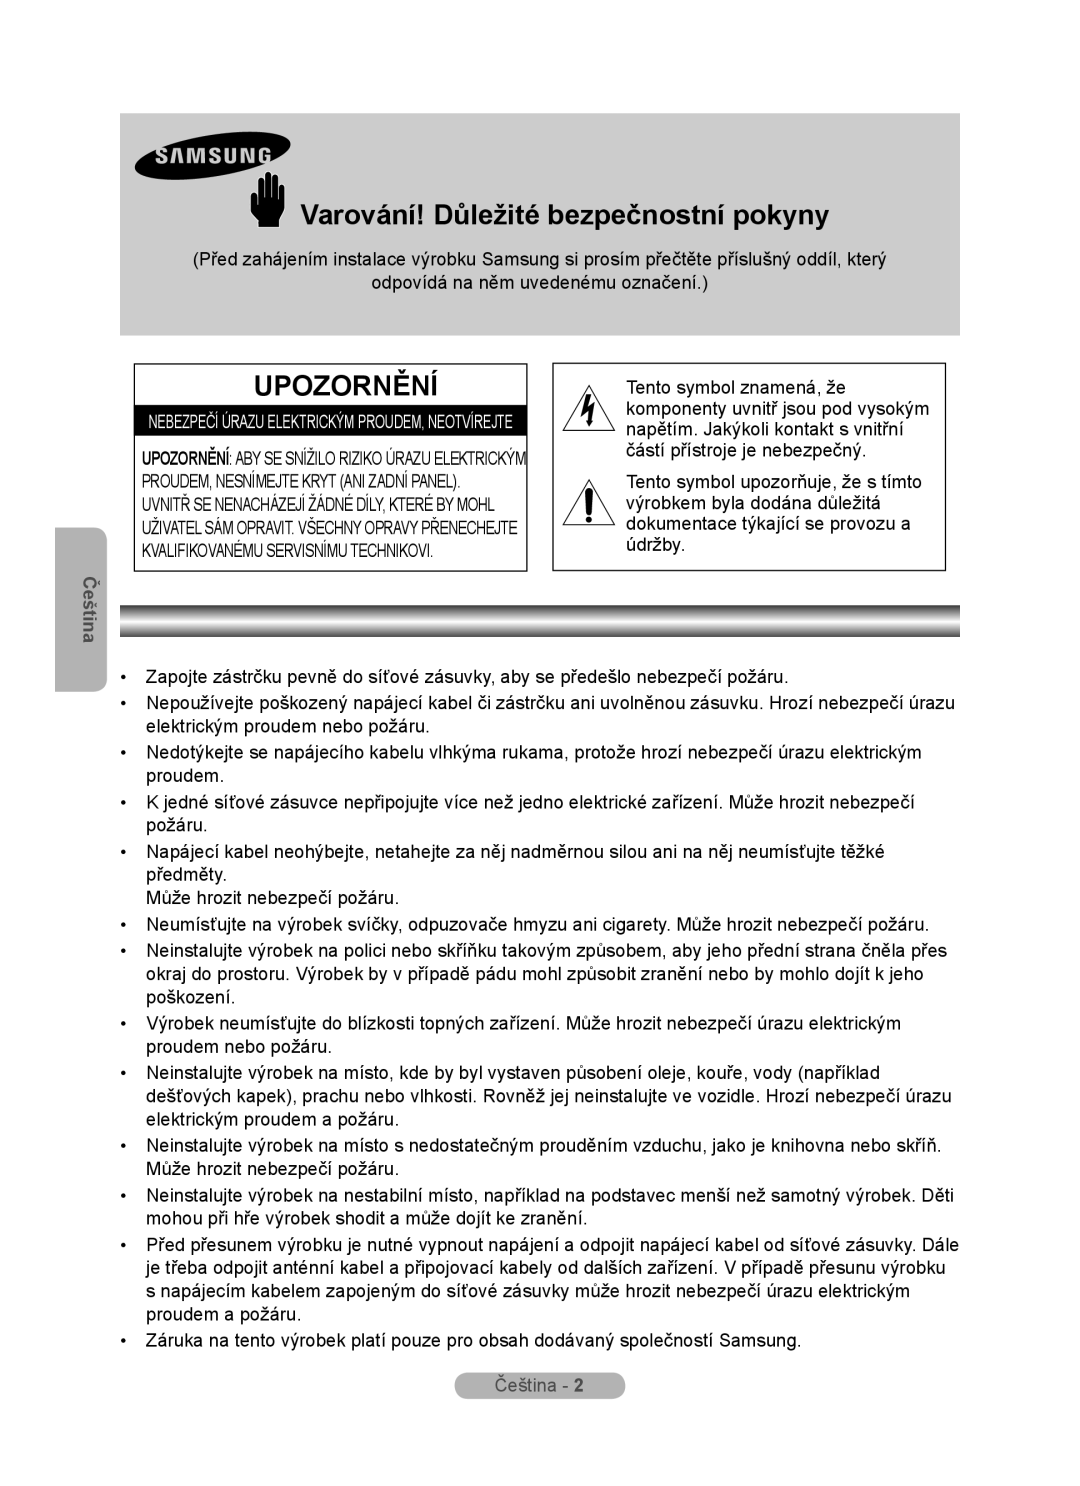 Samsung MR-16SB2 manual Varování! Důležité bezpečnostní pokyny, Upozornění, Čeština 